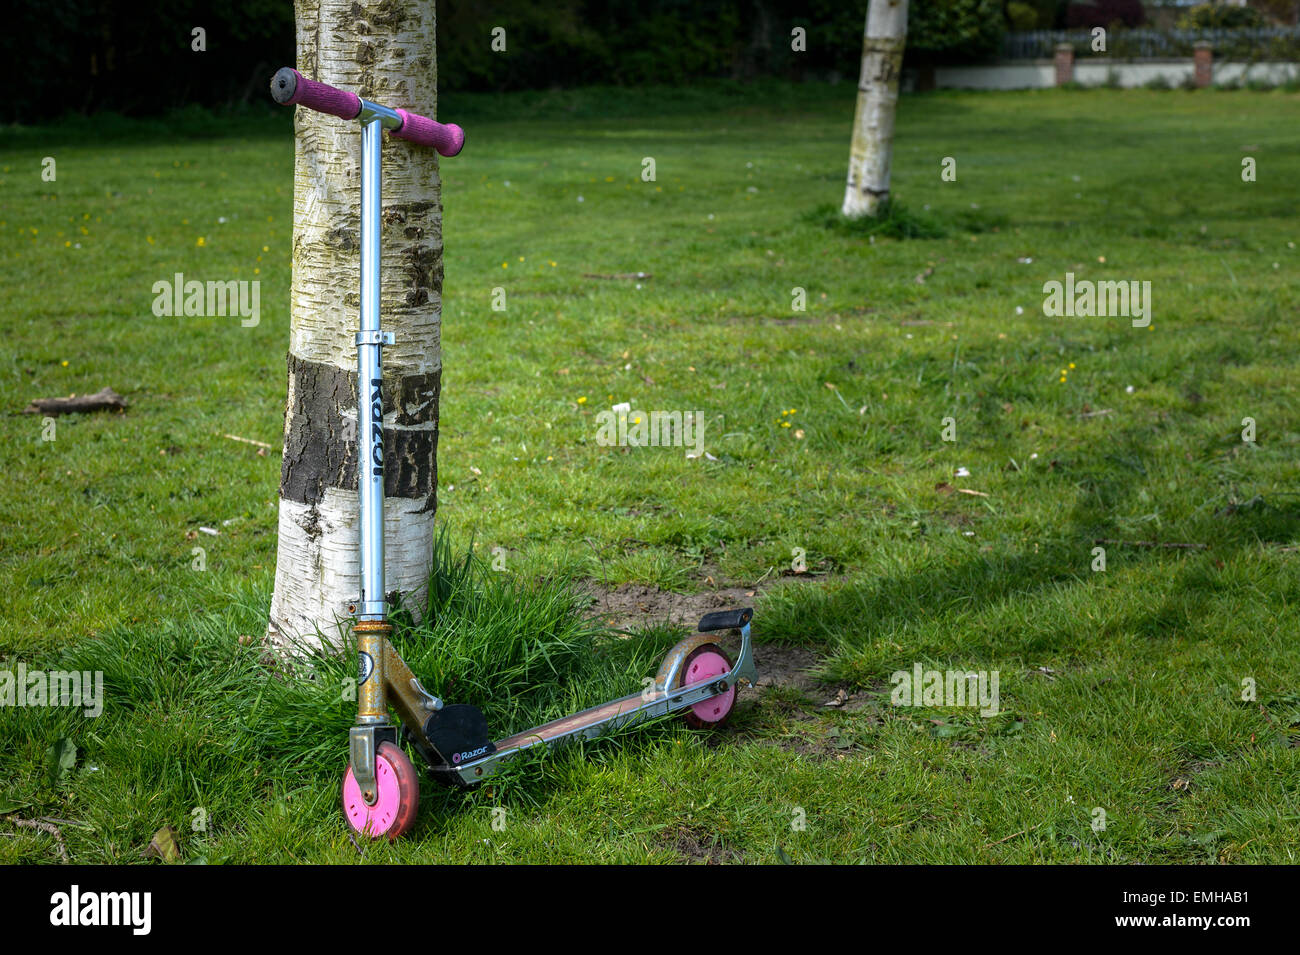 Verlassen des Kindes Scooter (Razor Marke - "Kick Scooter") an einen Baum gelehnt. Fehlende Kind Konzept. Stockfoto